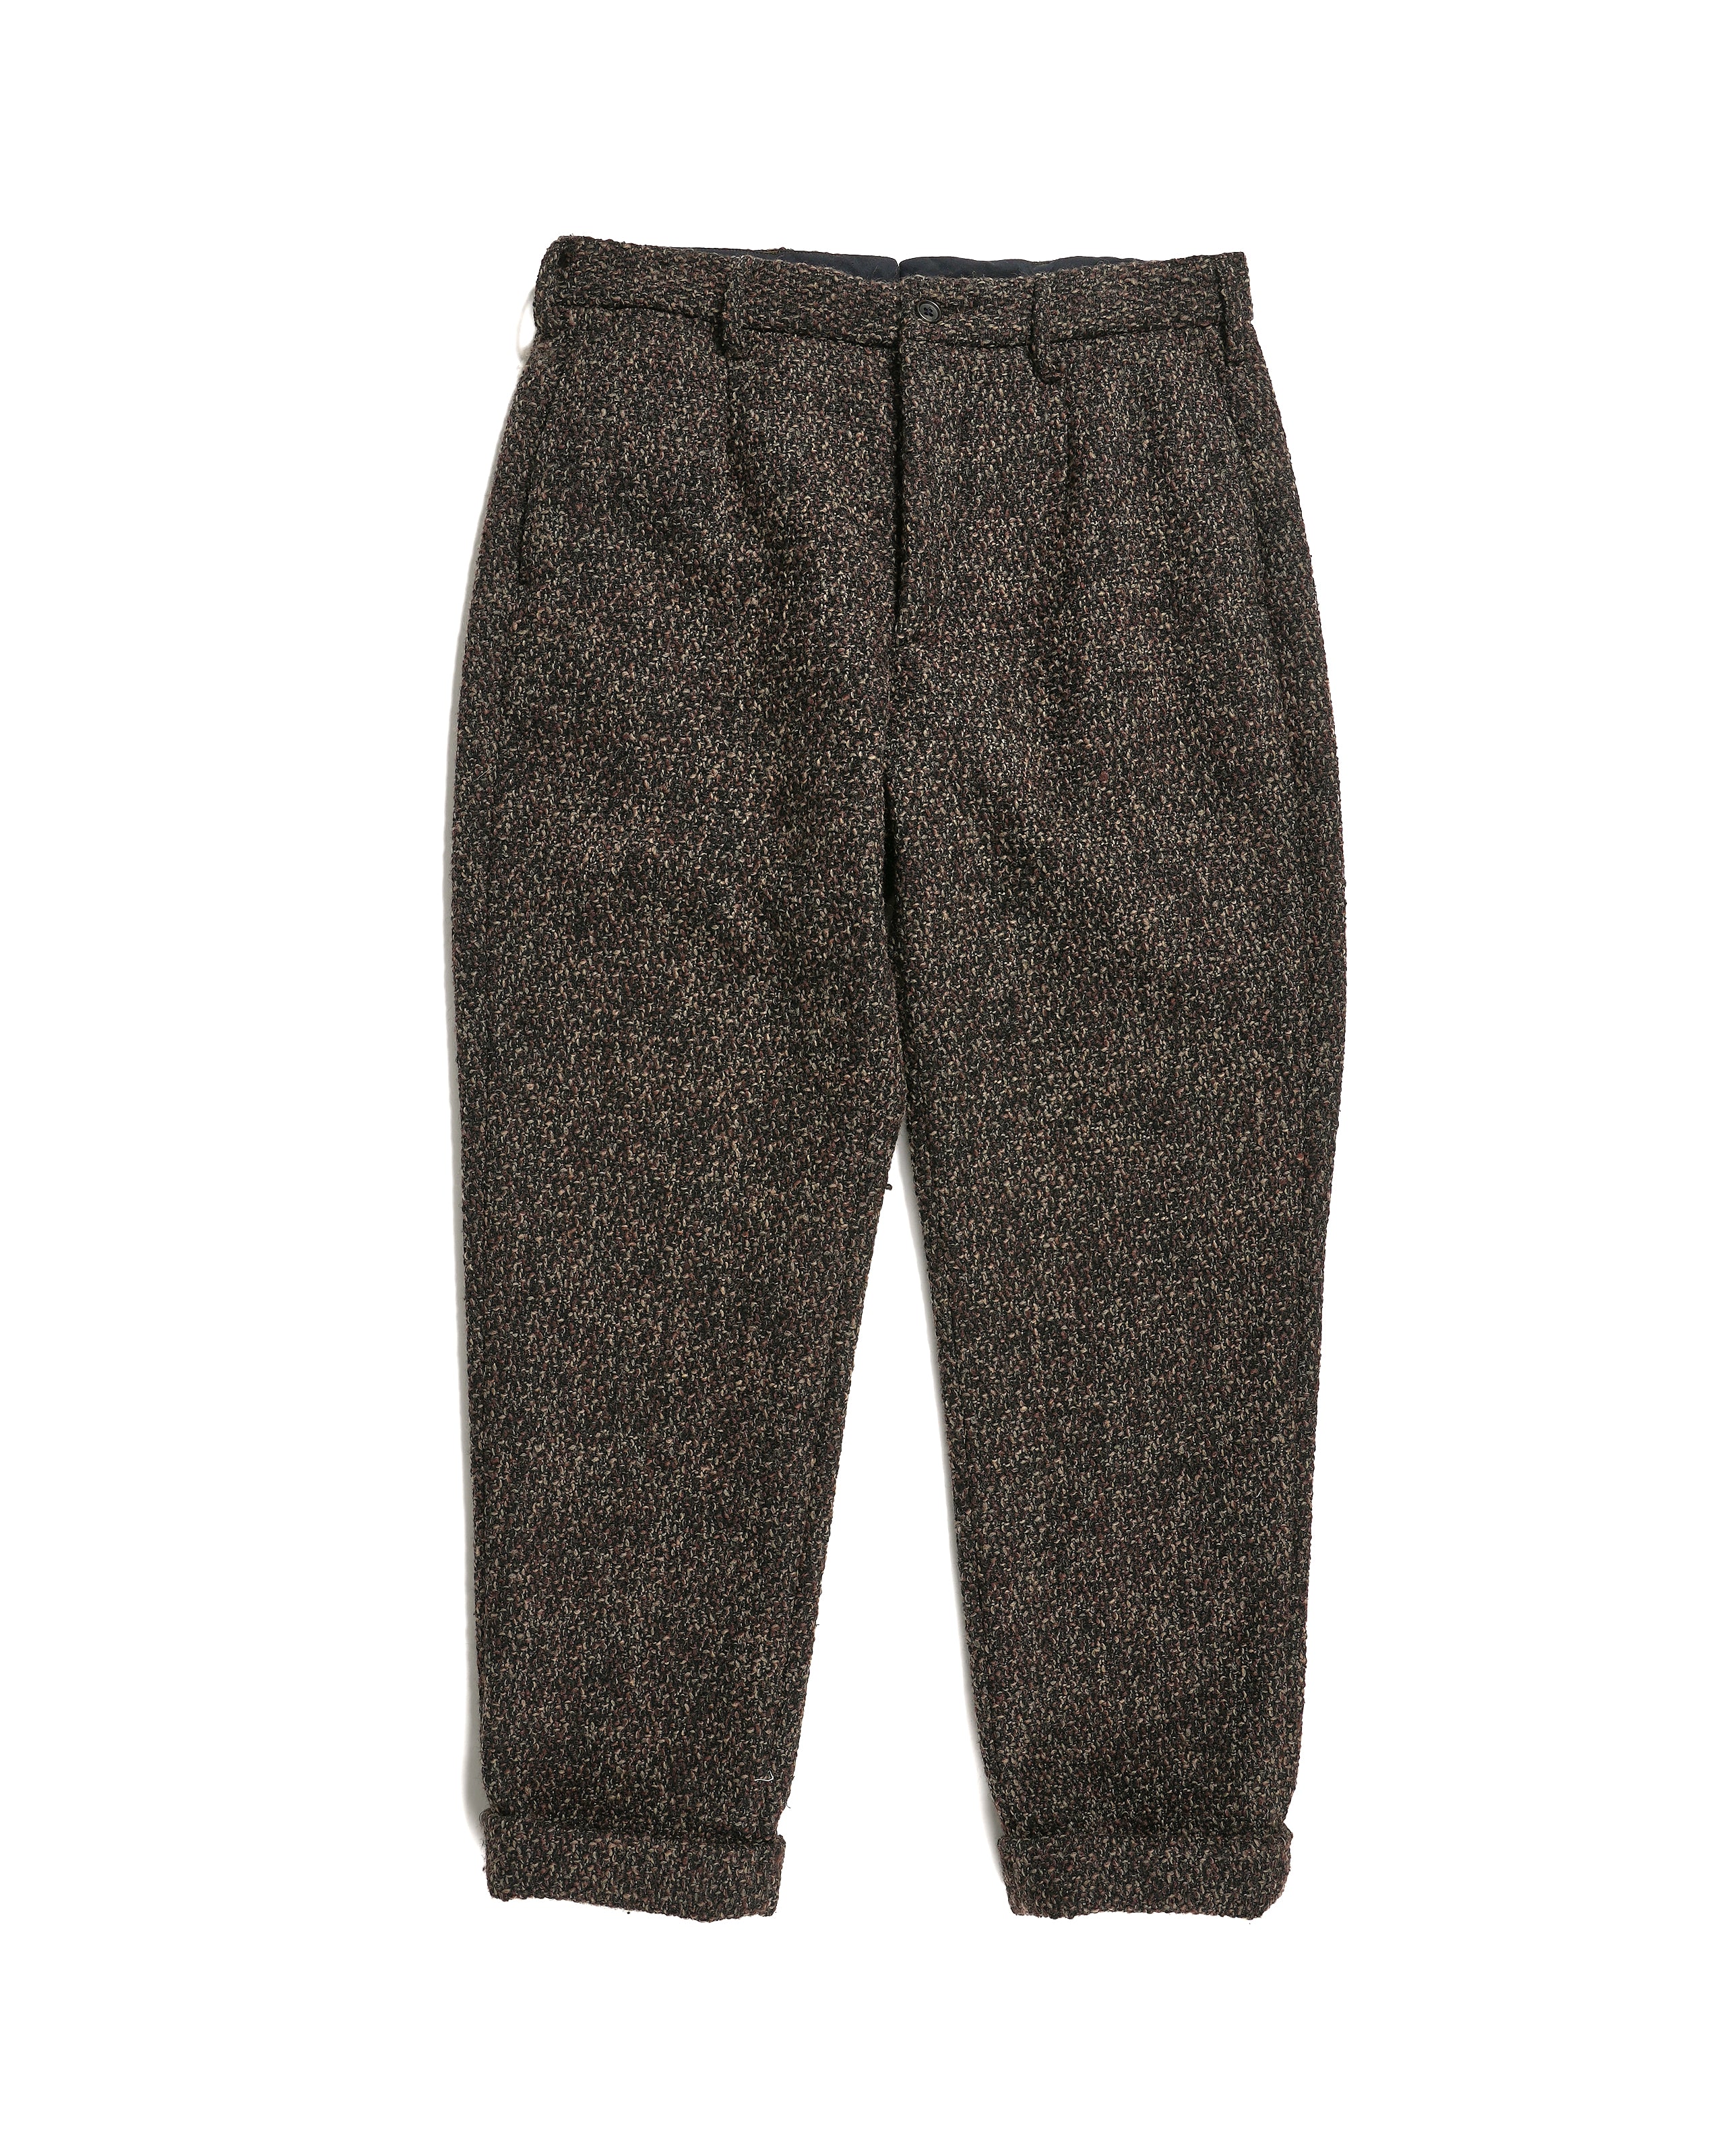 Andover Pant - Dark Brown Polyester Wool Tweed